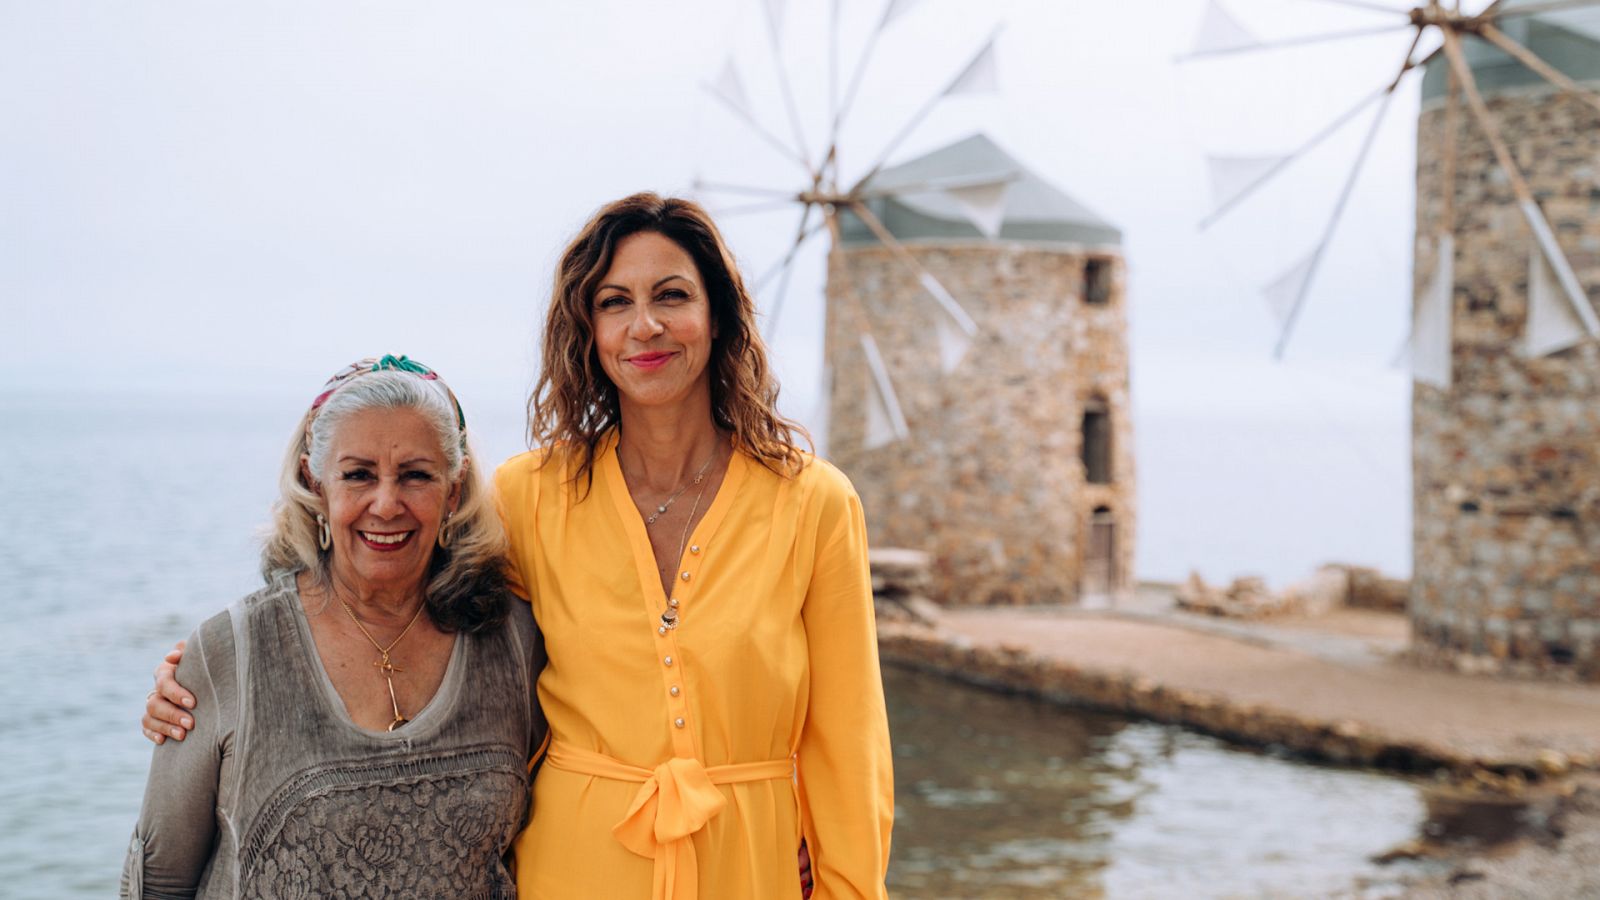 Las islas griegas con Julia Bradbury - Quíos - ver ahora